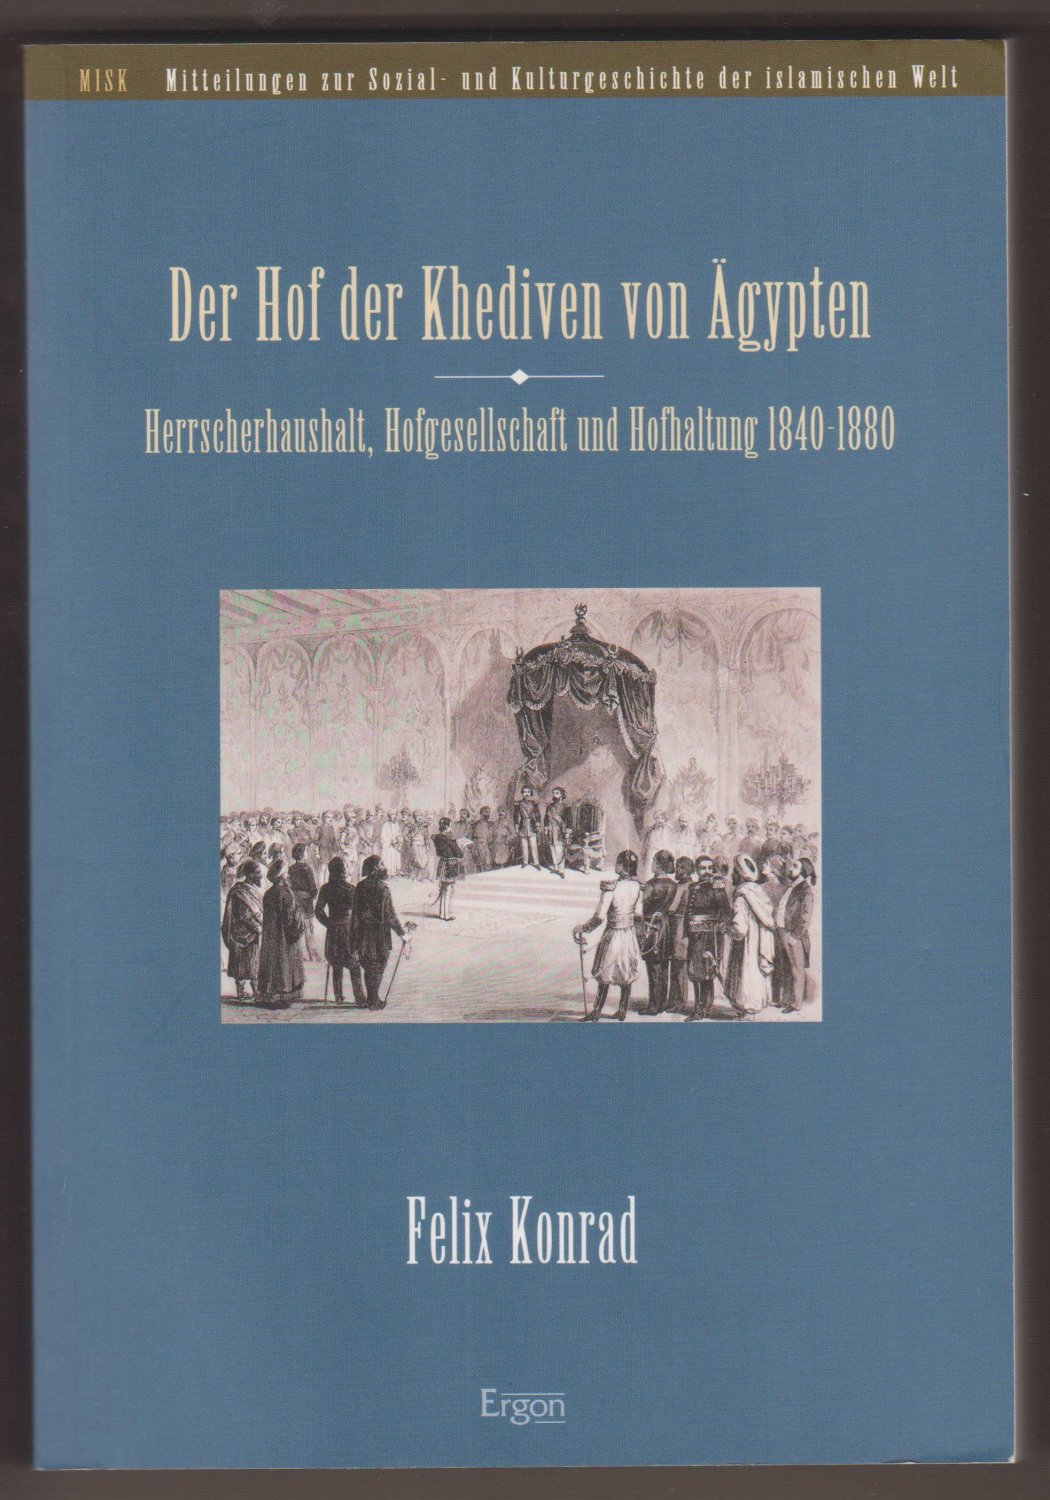 KONRAD, Felix:  Der Hof der Khediven von Ägypten. Herrscherhaushalt, Hofgesellschaft und Hofhaltung 1840-1880. 